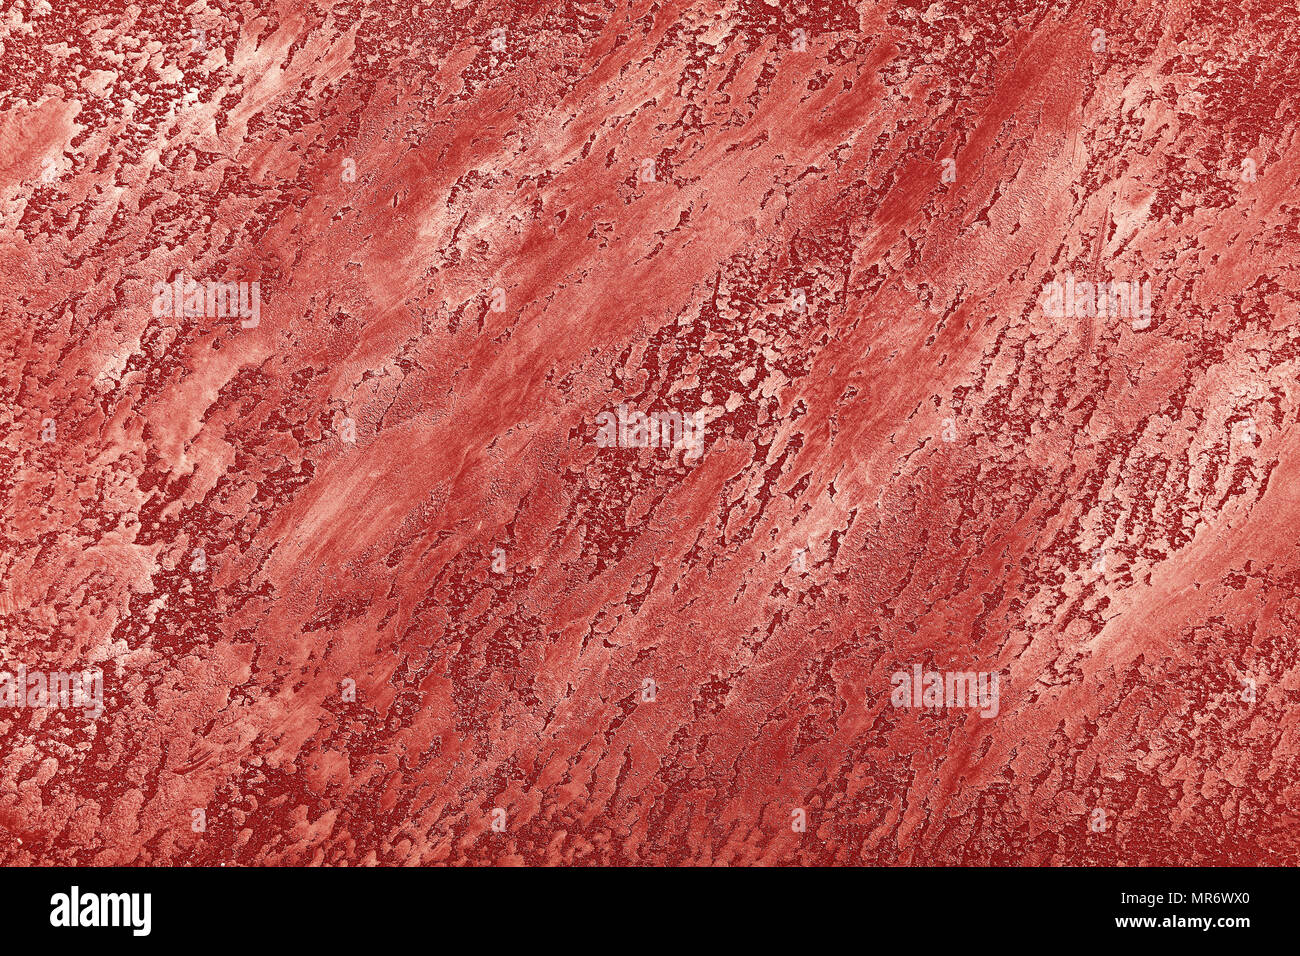 Grunge rot verblasst unebenen Alten daub Pflasterwand Textur Hintergrund mit Flecken und Pinselstriche, in der Nähe Stockfoto